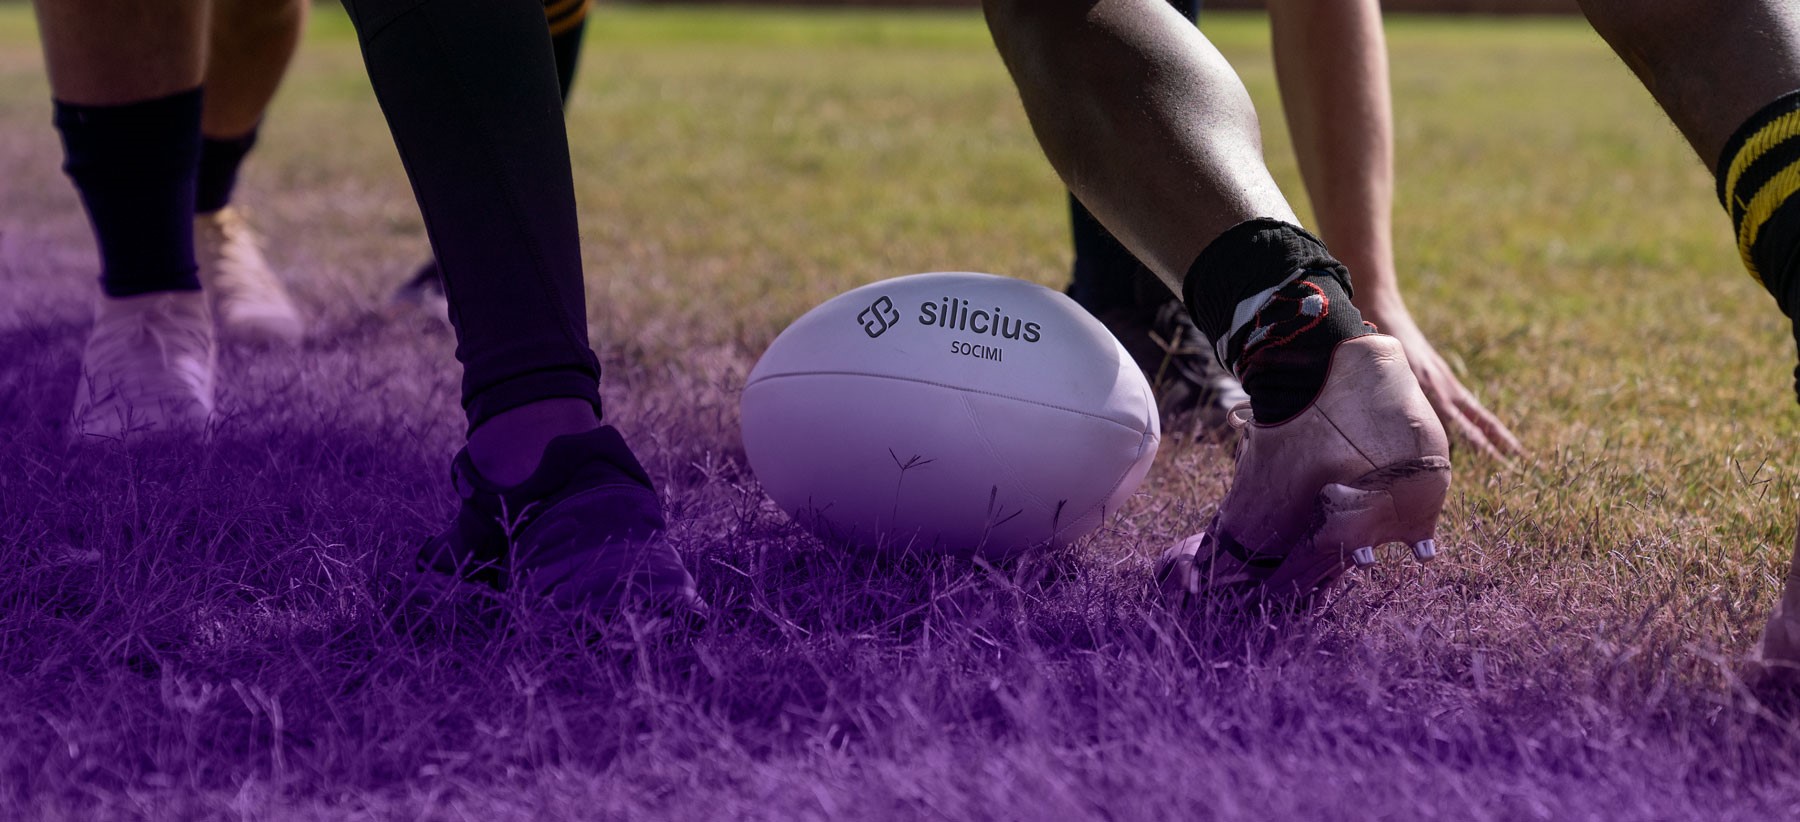 SILICIUS reafirma su compromiso con el rugby y renueva su apoyo a cuatro clubes de la Comunidad de Madrid y Castilla y León